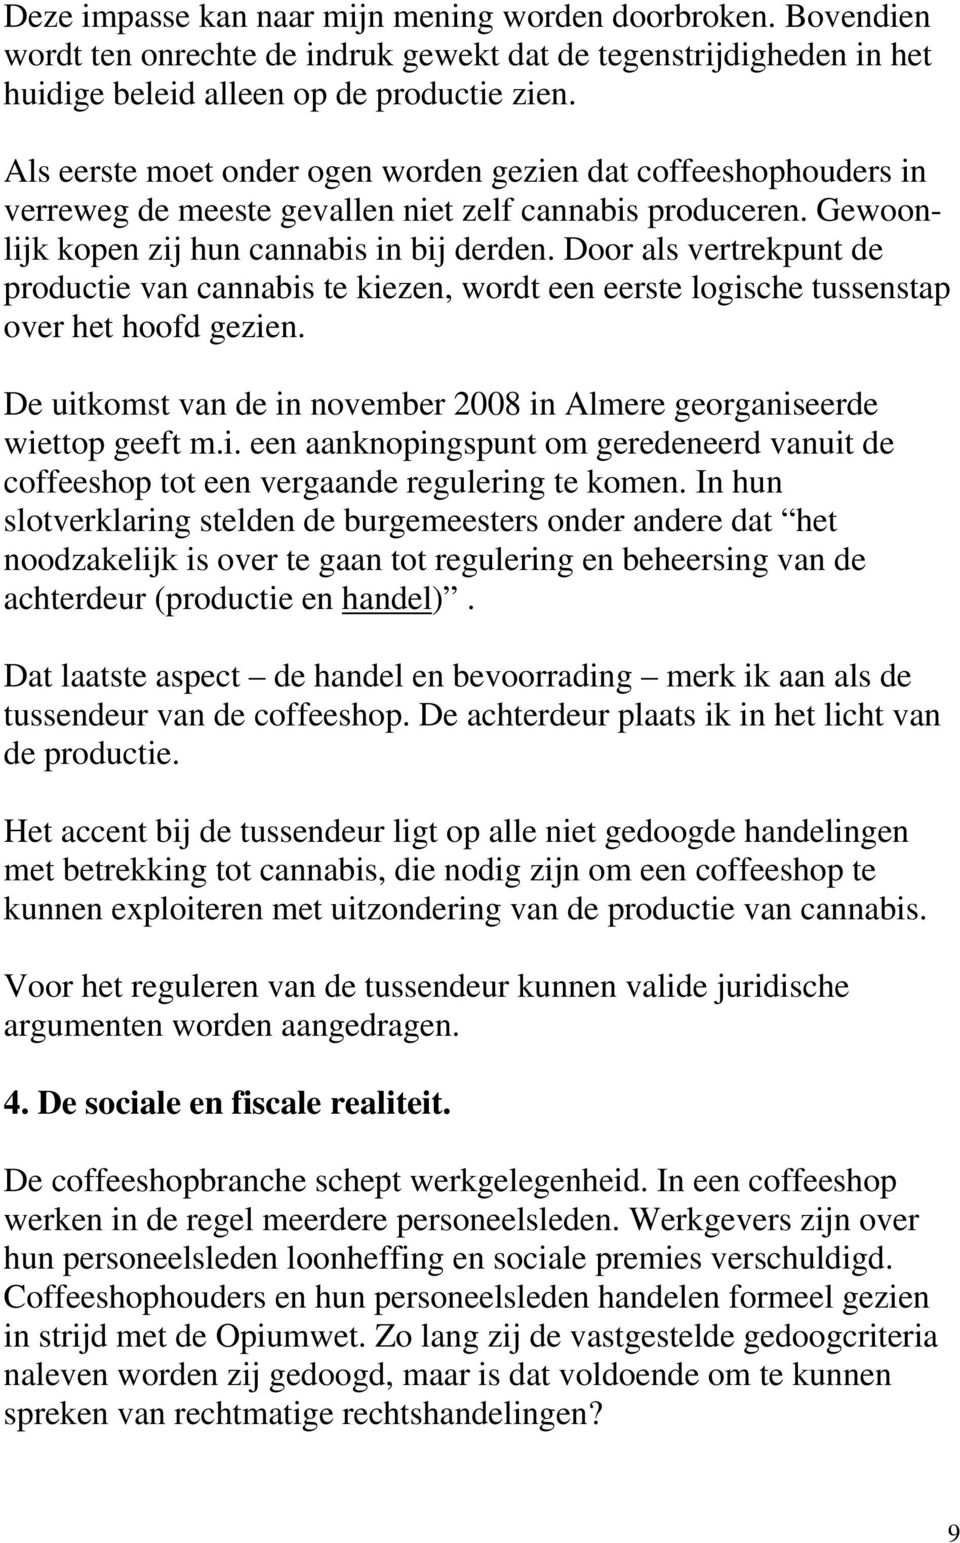 Door als vertrekpunt de productie van cannabis te kiezen, wordt een eerste logische tussenstap over het hoofd gezien. De uitkomst van de in november 2008 in Almere georganiseerde wiettop geeft m.i. een aanknopingspunt om geredeneerd vanuit de coffeeshop tot een vergaande regulering te komen.